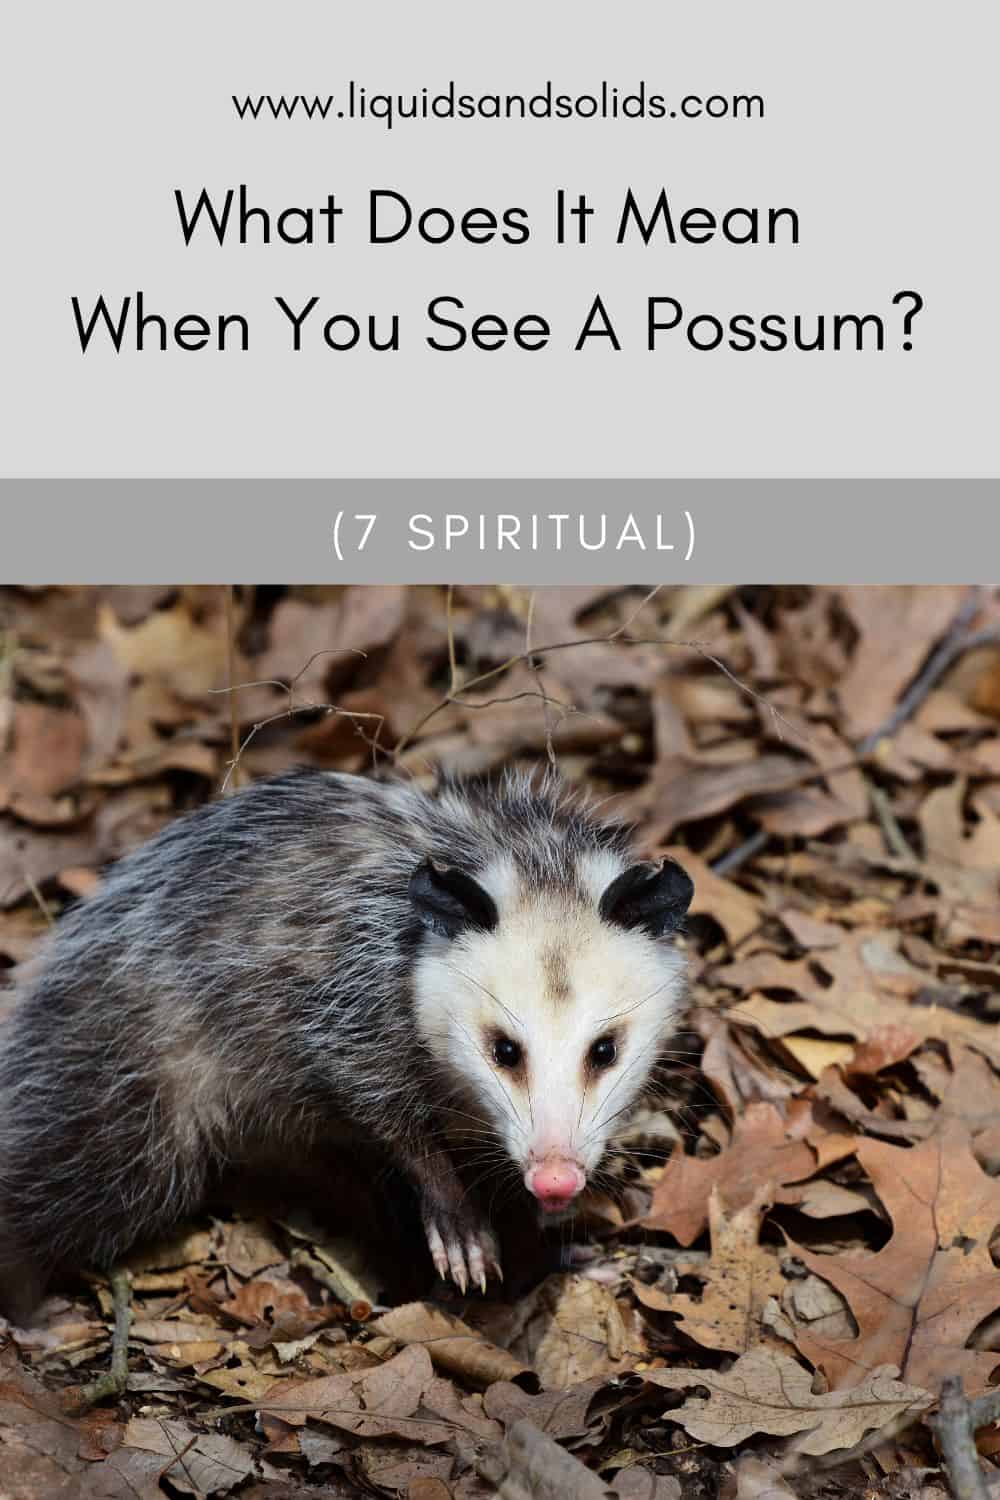  Mit jelent, ha egy oposszumot látsz? (7 spirituális jelentés)